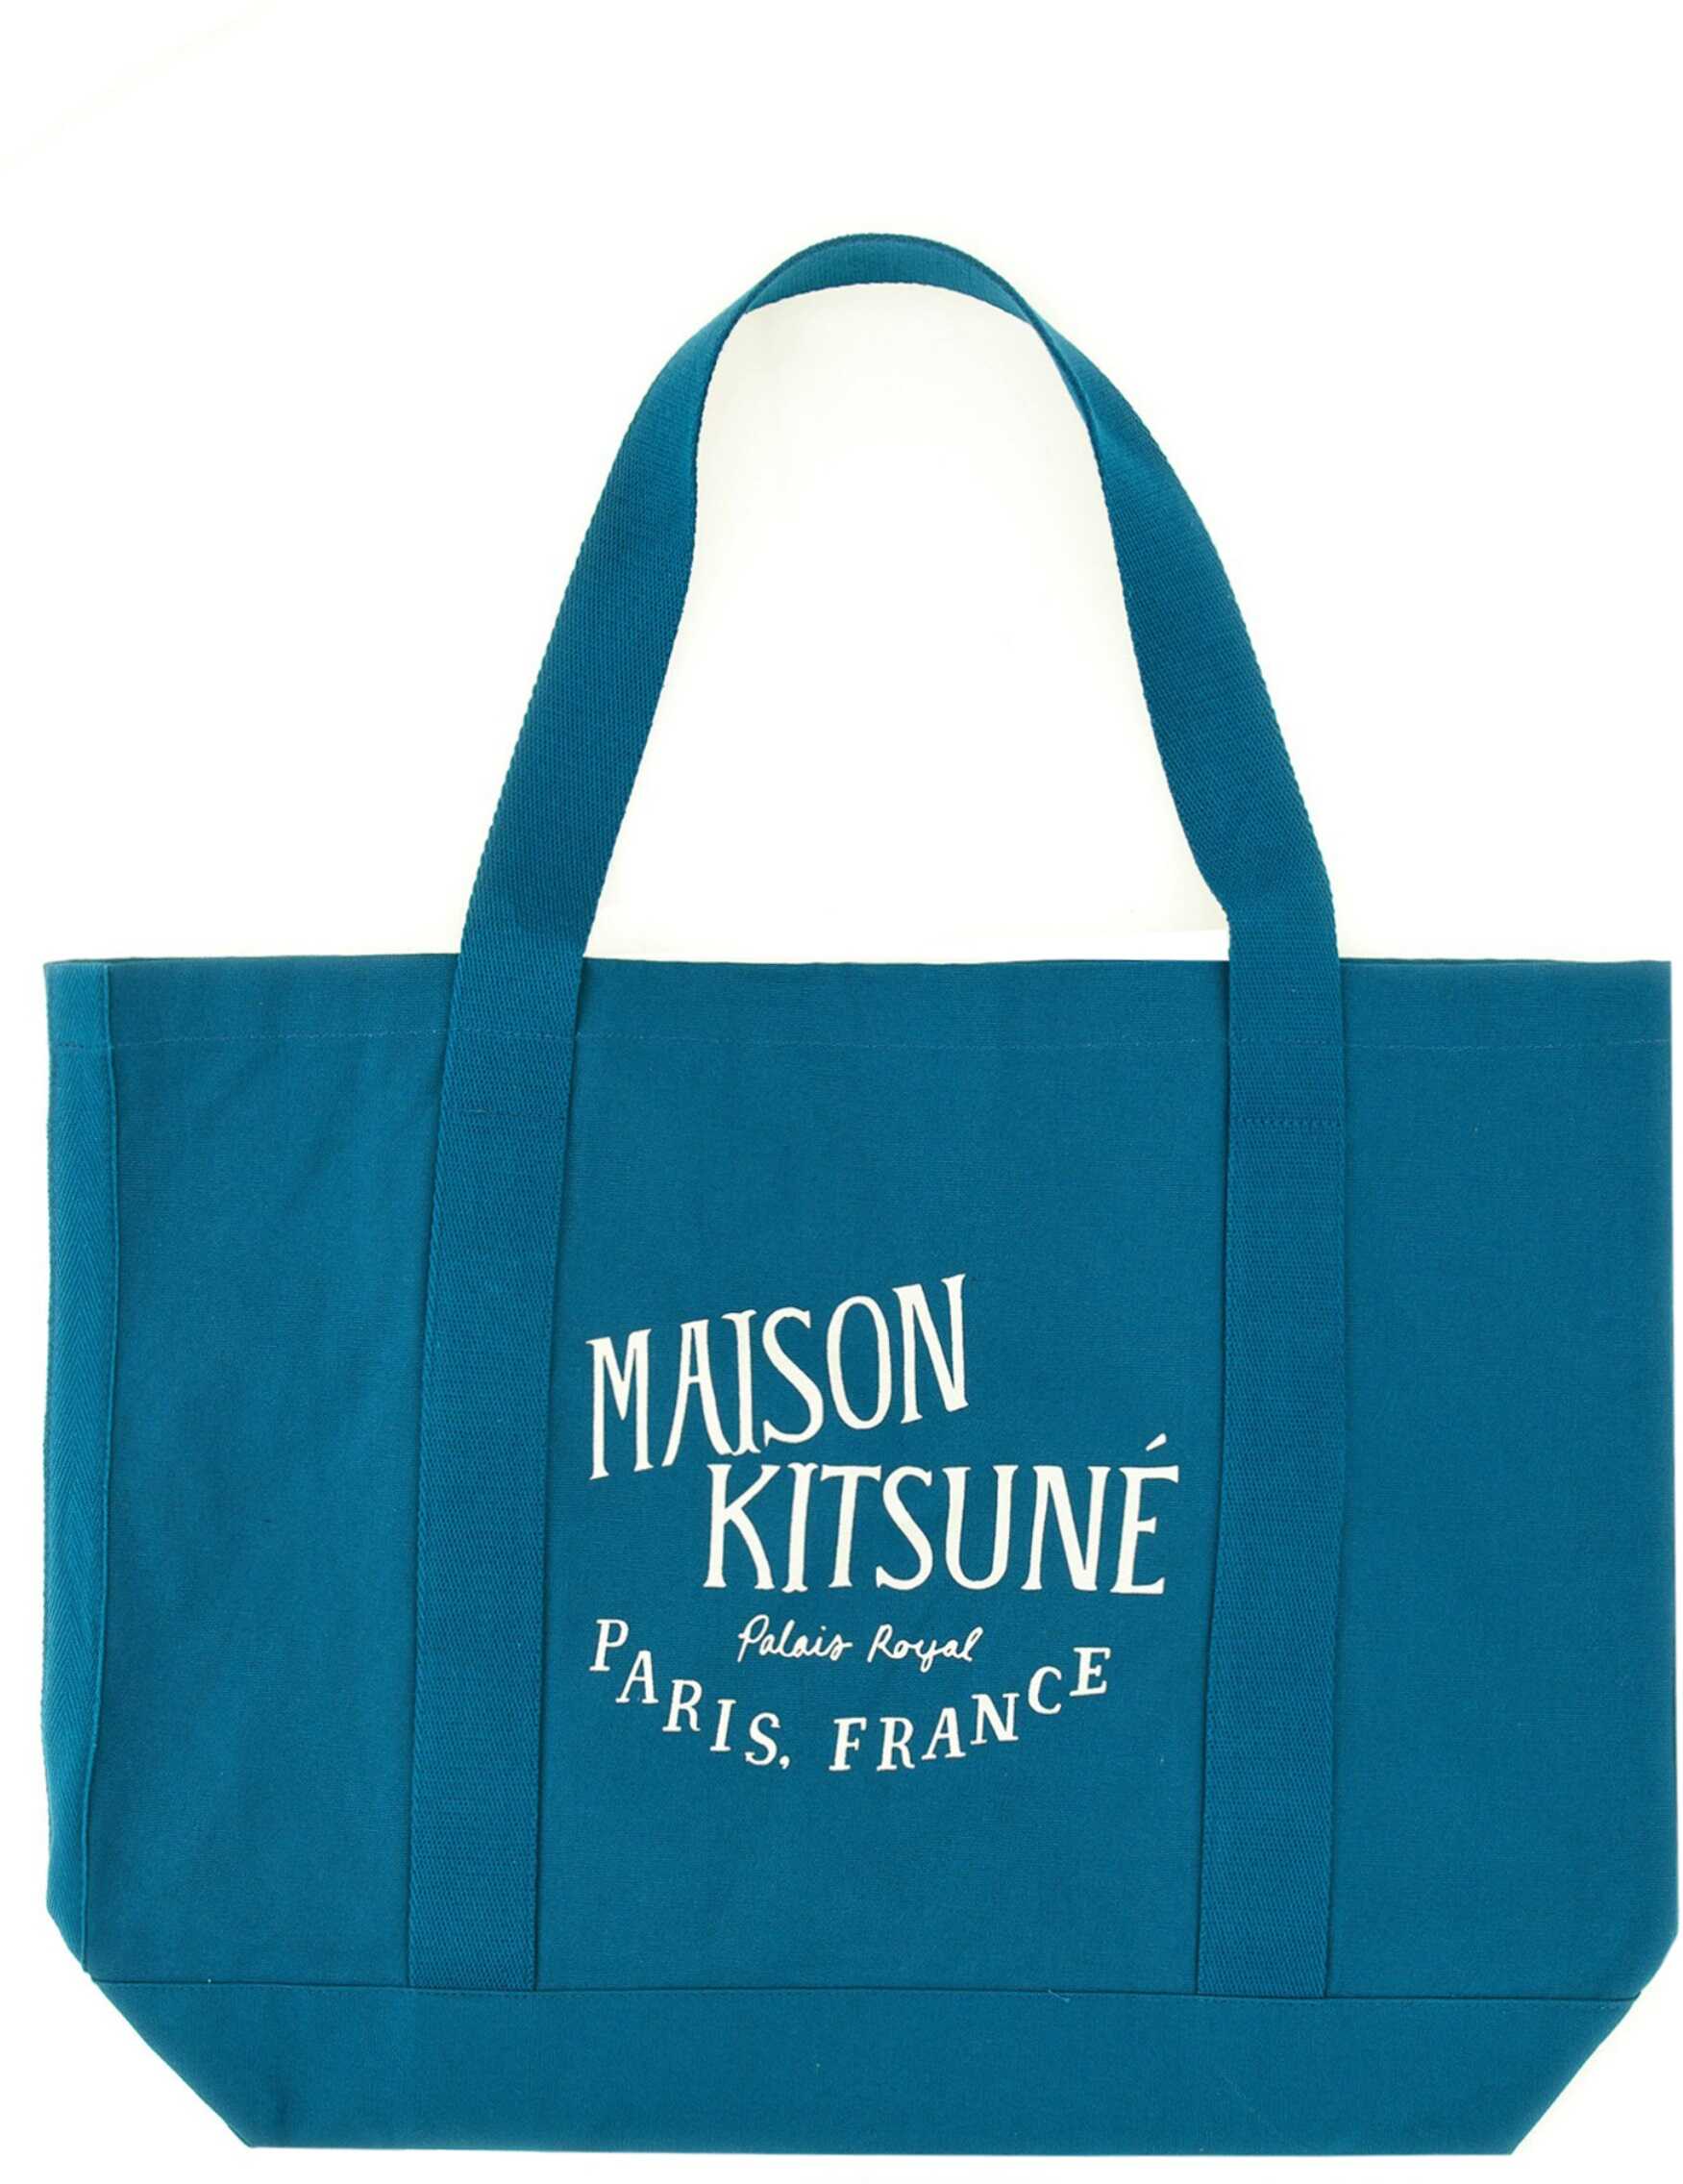 MAISON KITSUNÉ Palais Royal Bag BLUE